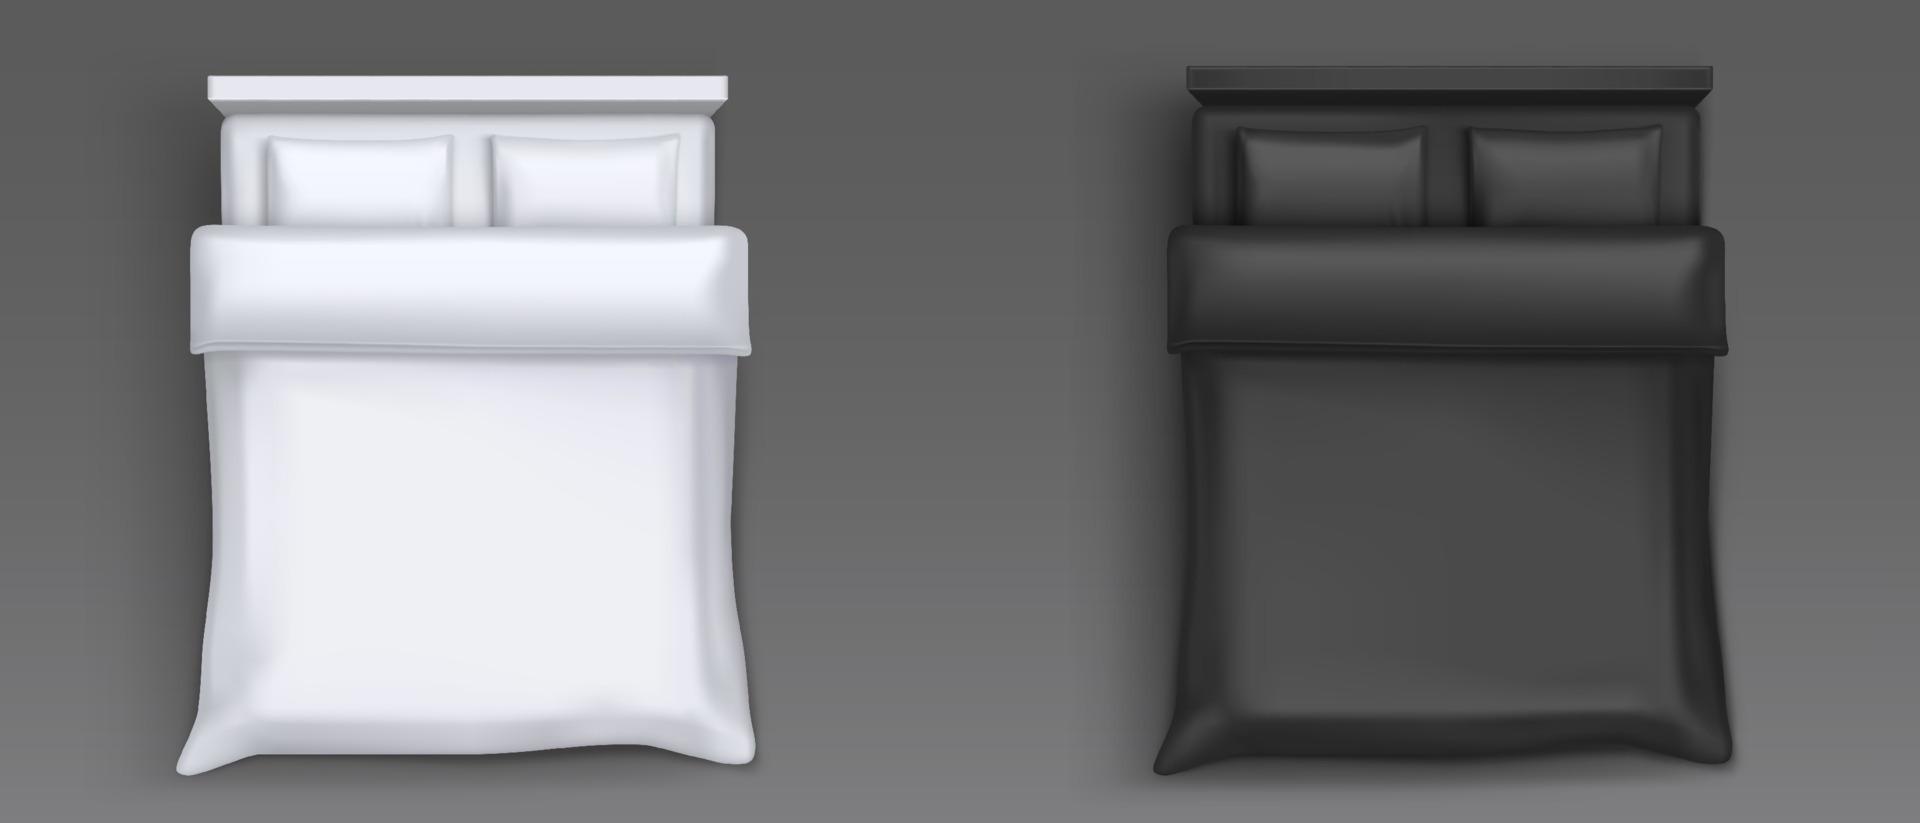 camas dobles con vista superior de lino blanco y negro vector